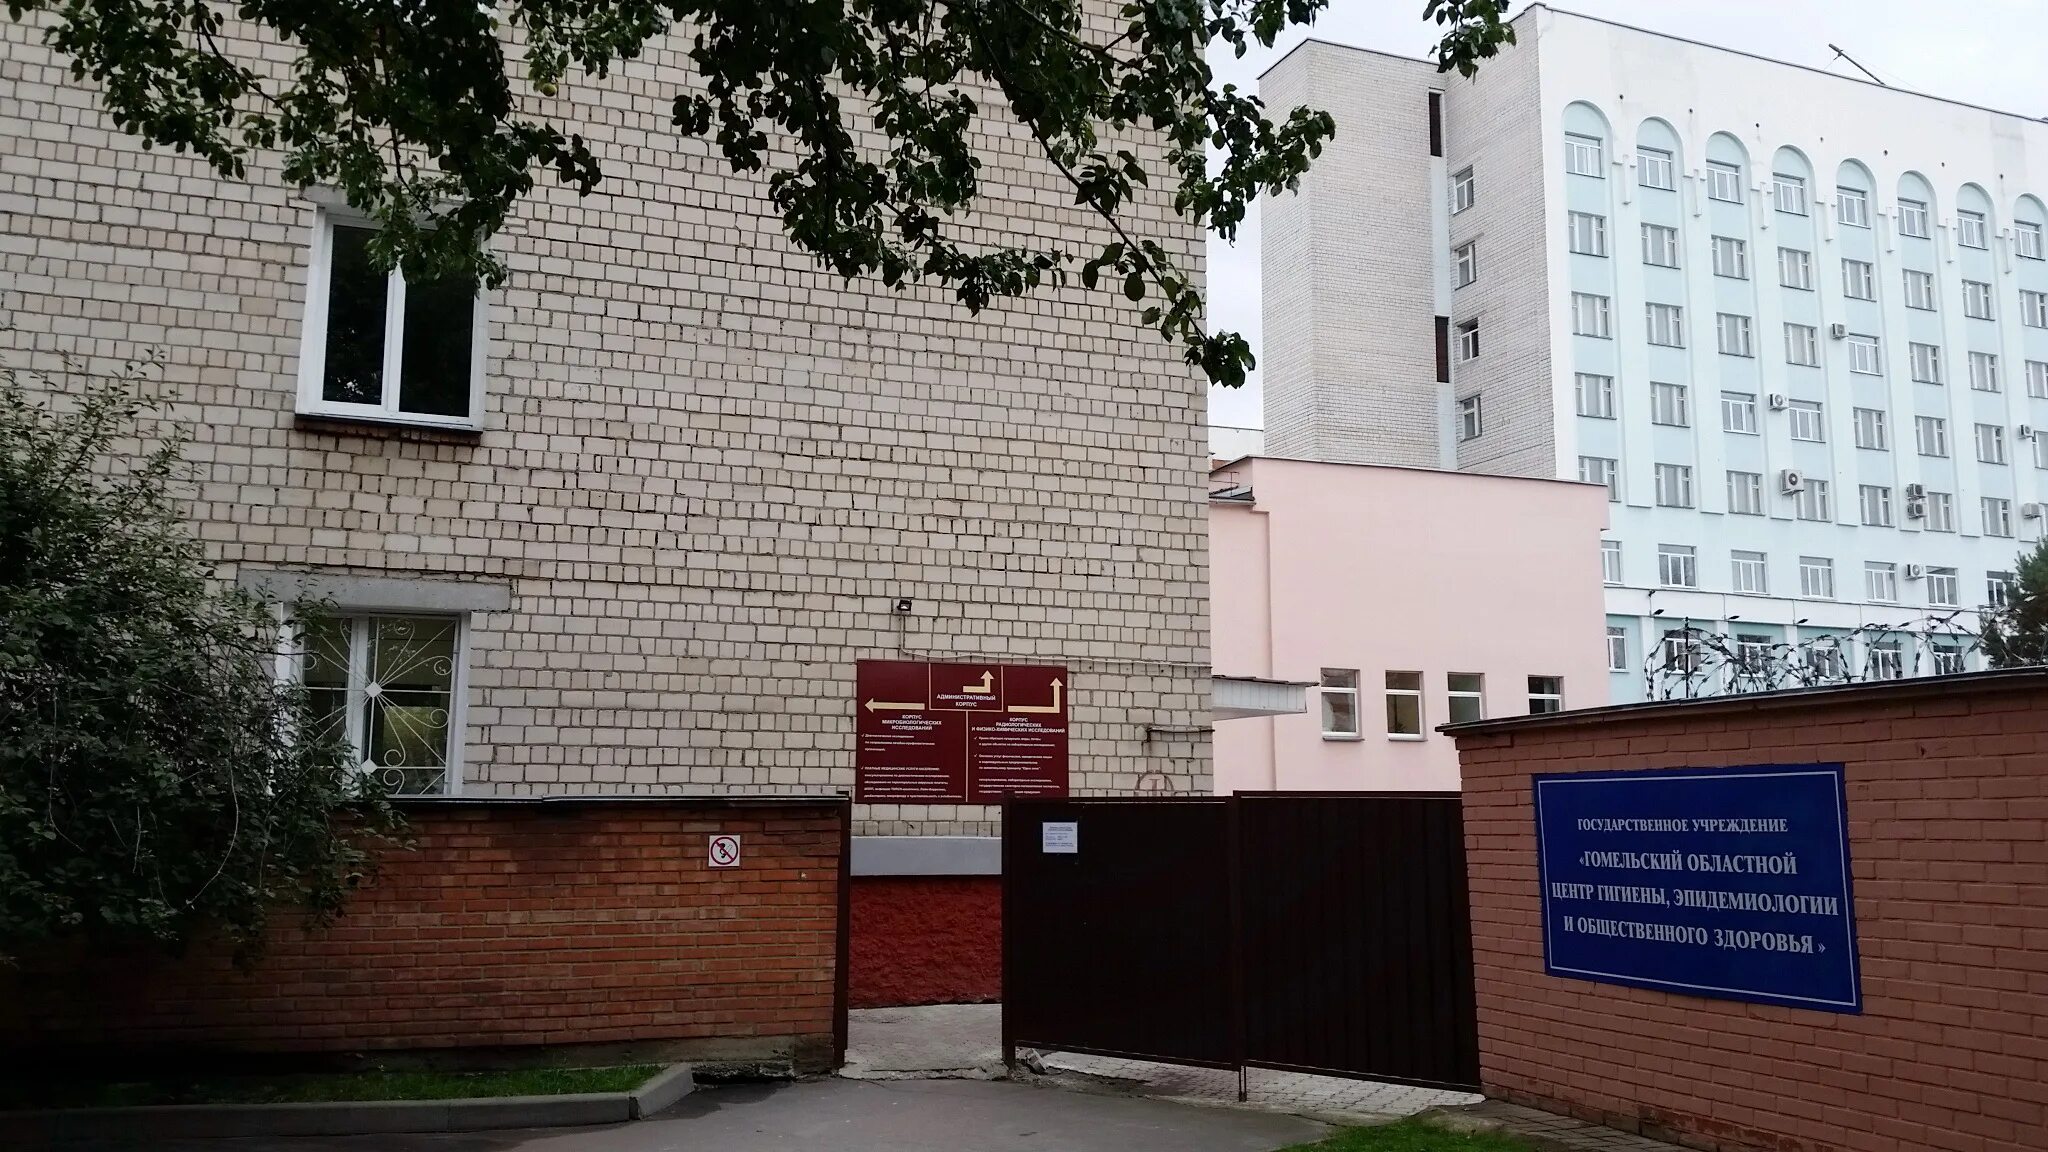 Минский городской центр эпидемиологии